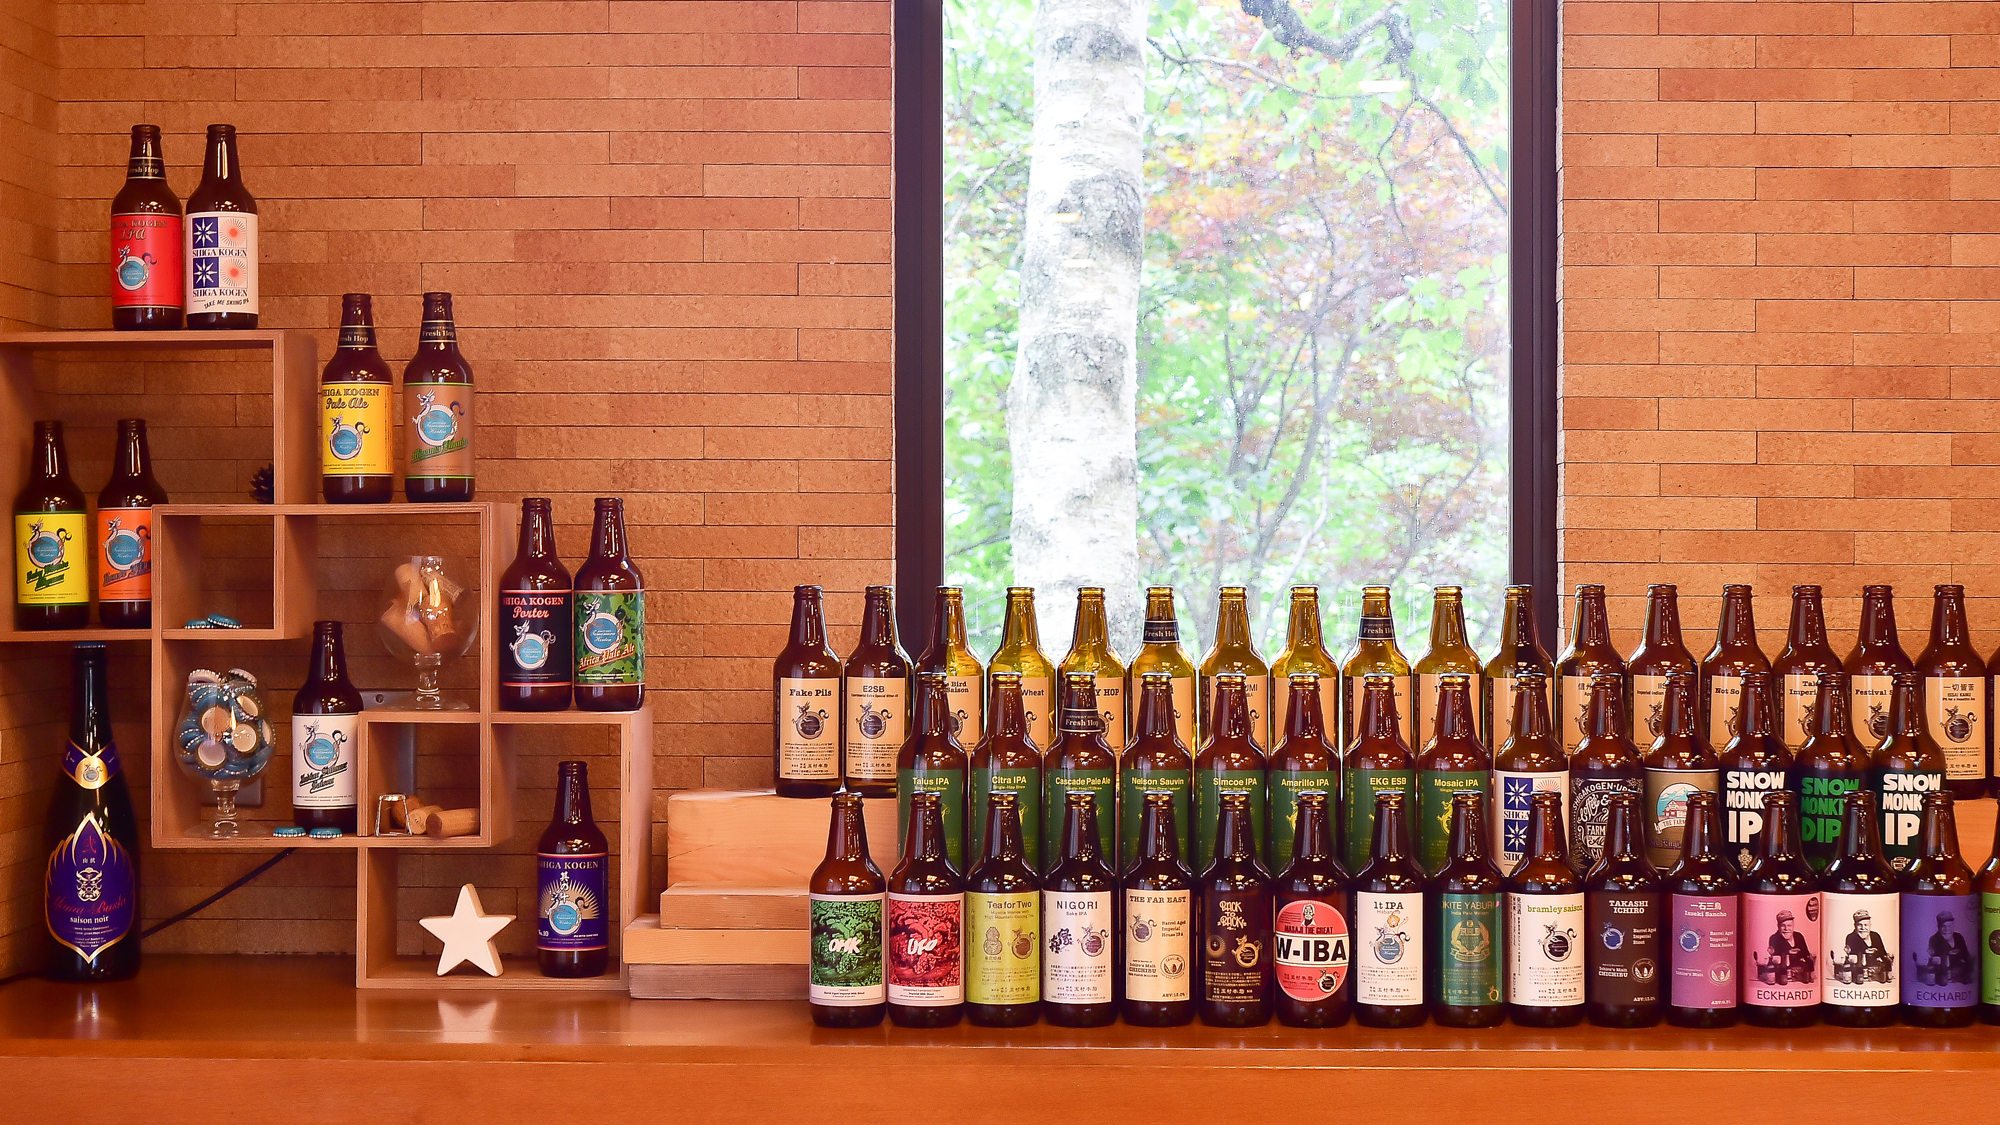 醸造元玉村本店様の「志賀高原ビール」をお楽しみいただけます